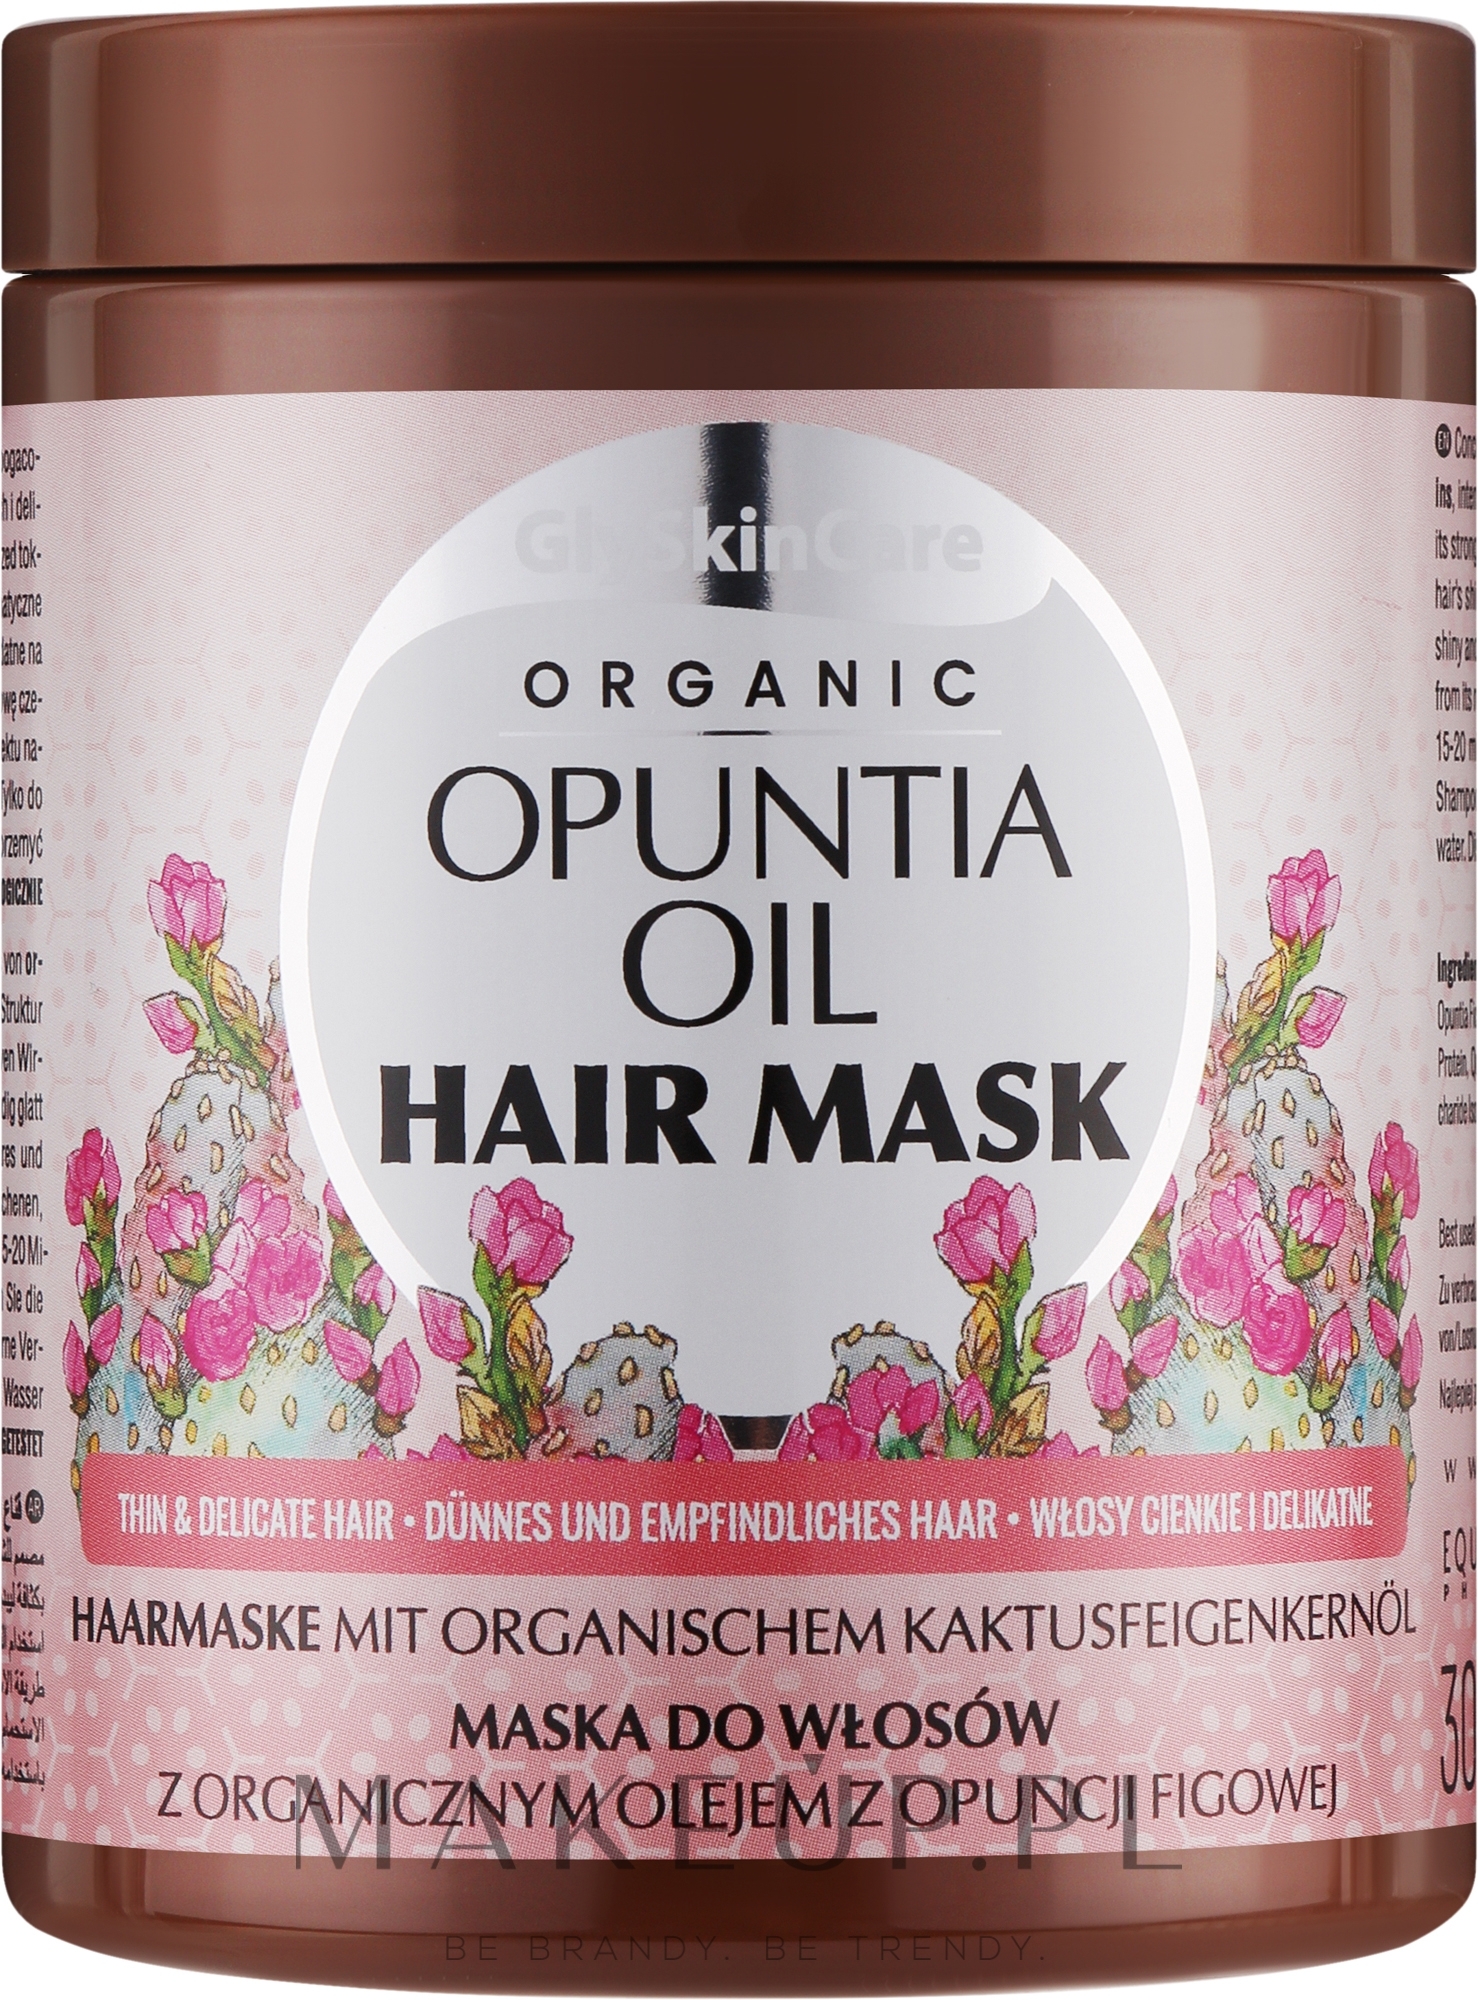 Maska do włosów z organicznym olejem z opuncji figowej - GlySkinCare Organic Opuntia Oil Hair Mask — Zdjęcie 300 ml